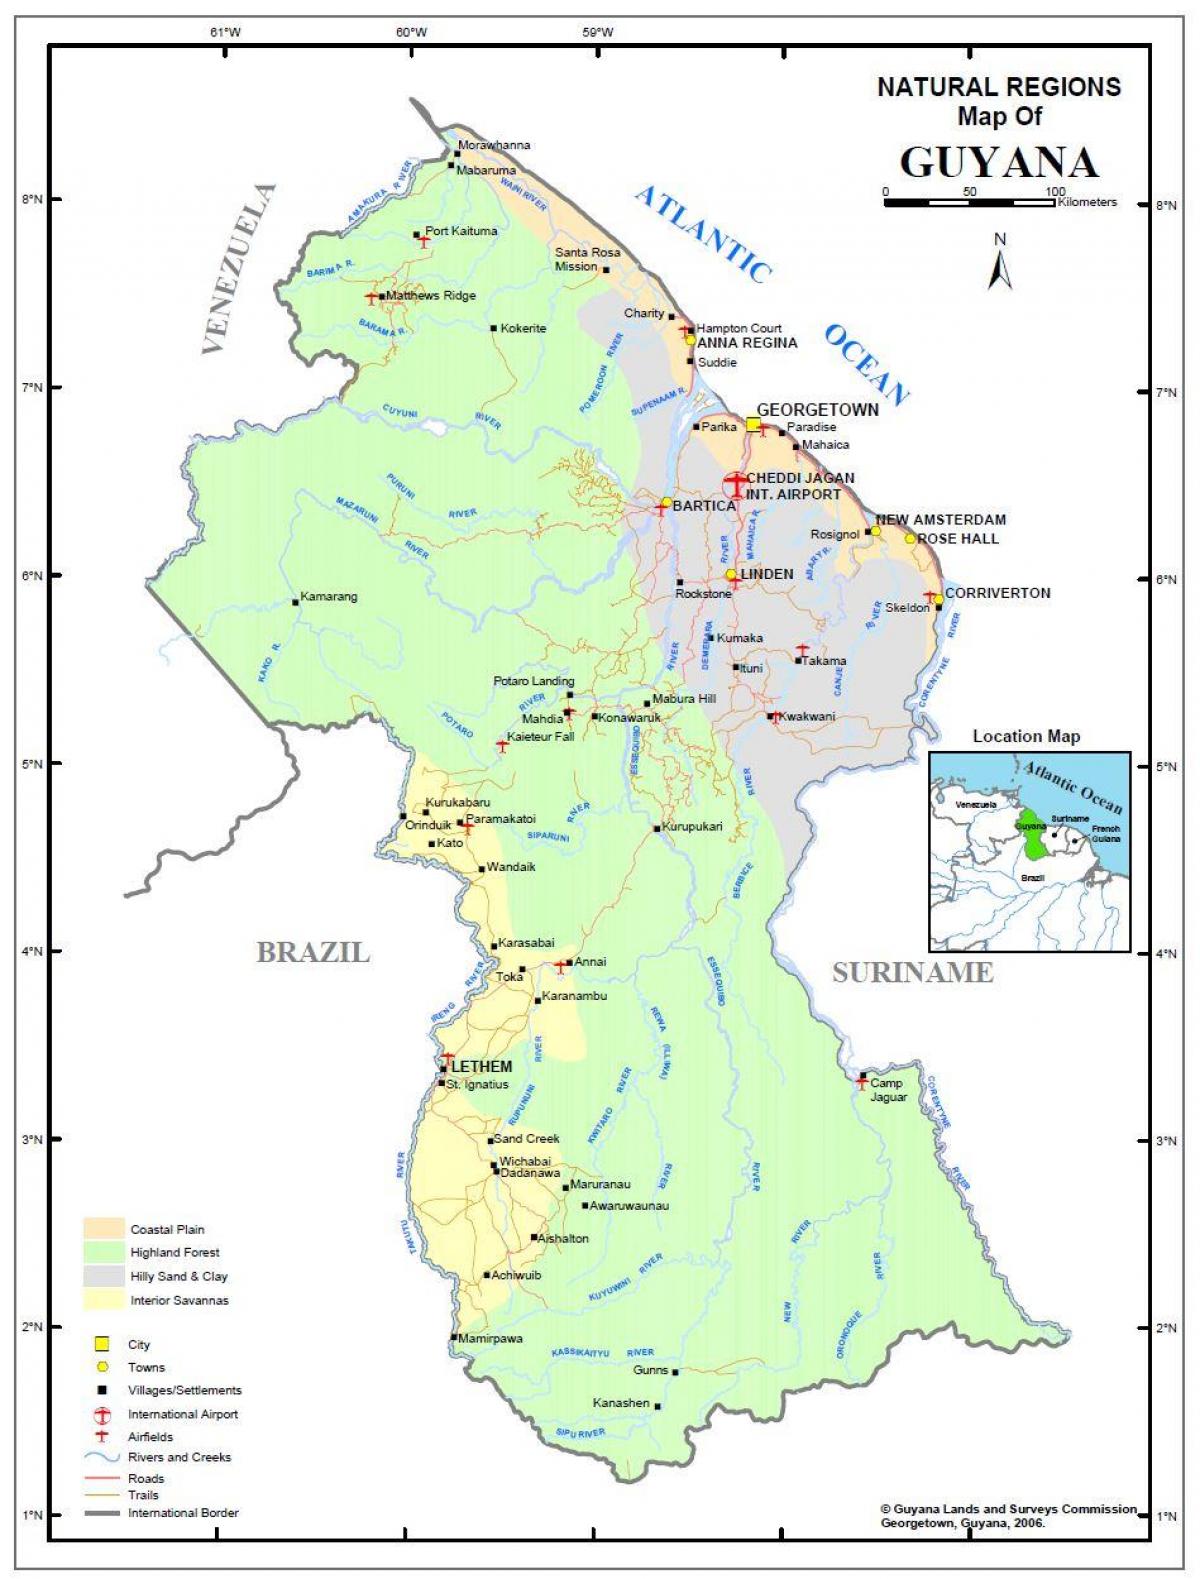 kart over Guyana viser 4 naturlige regioner